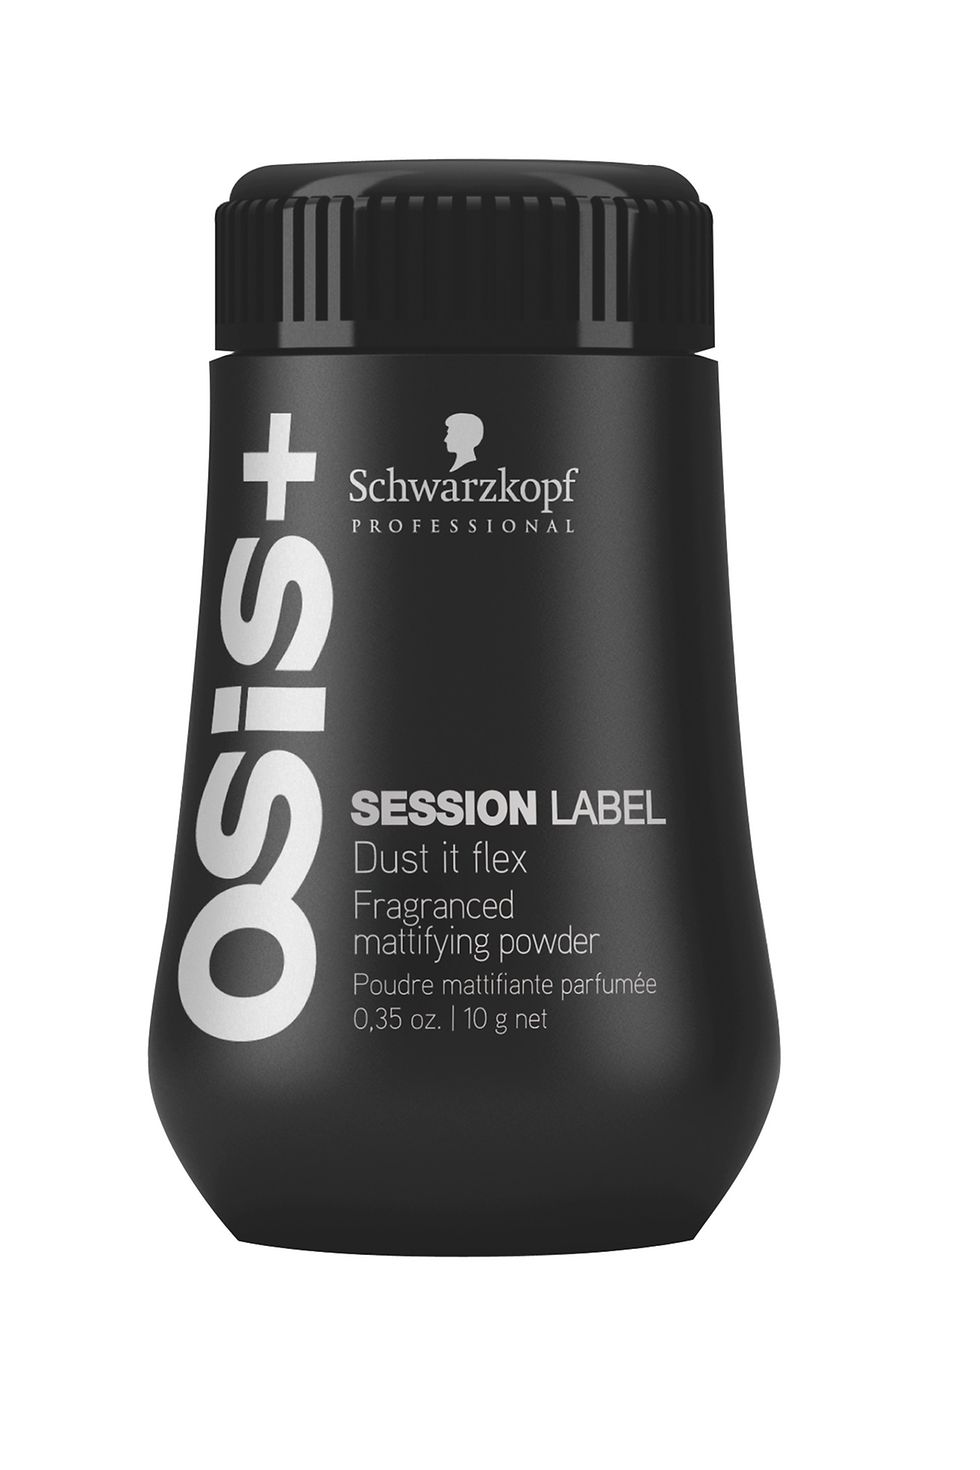 OSiS+ Session Label Dust it flex